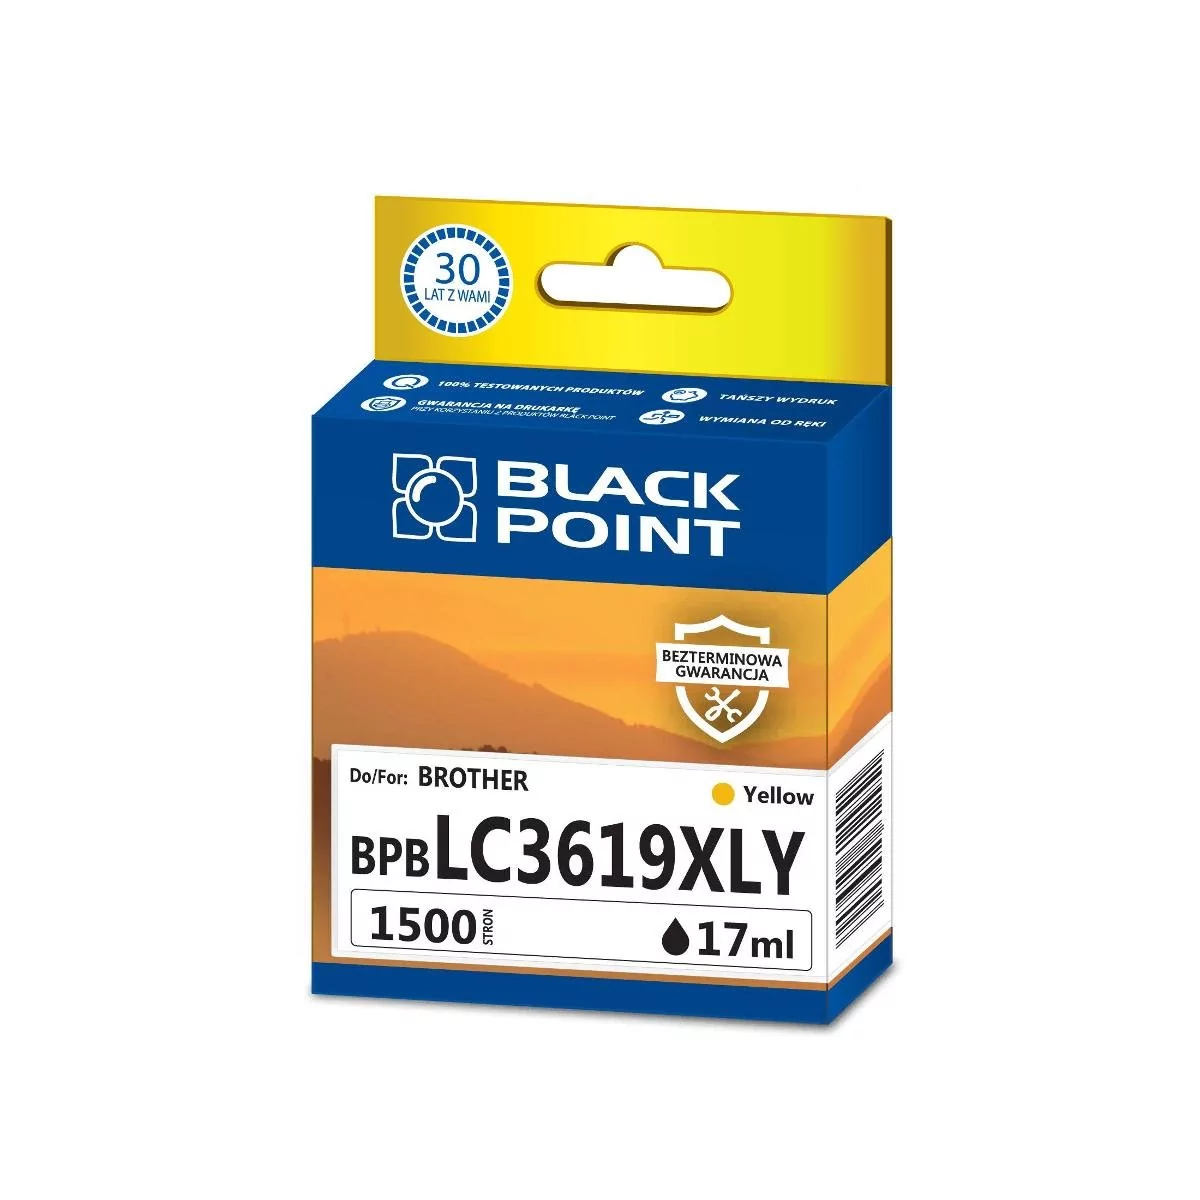 BlackPoint Tusz zgodny z Brother LC1619XLY Żółty produkcji Black Point 1500 stron BPBLC3619XLY